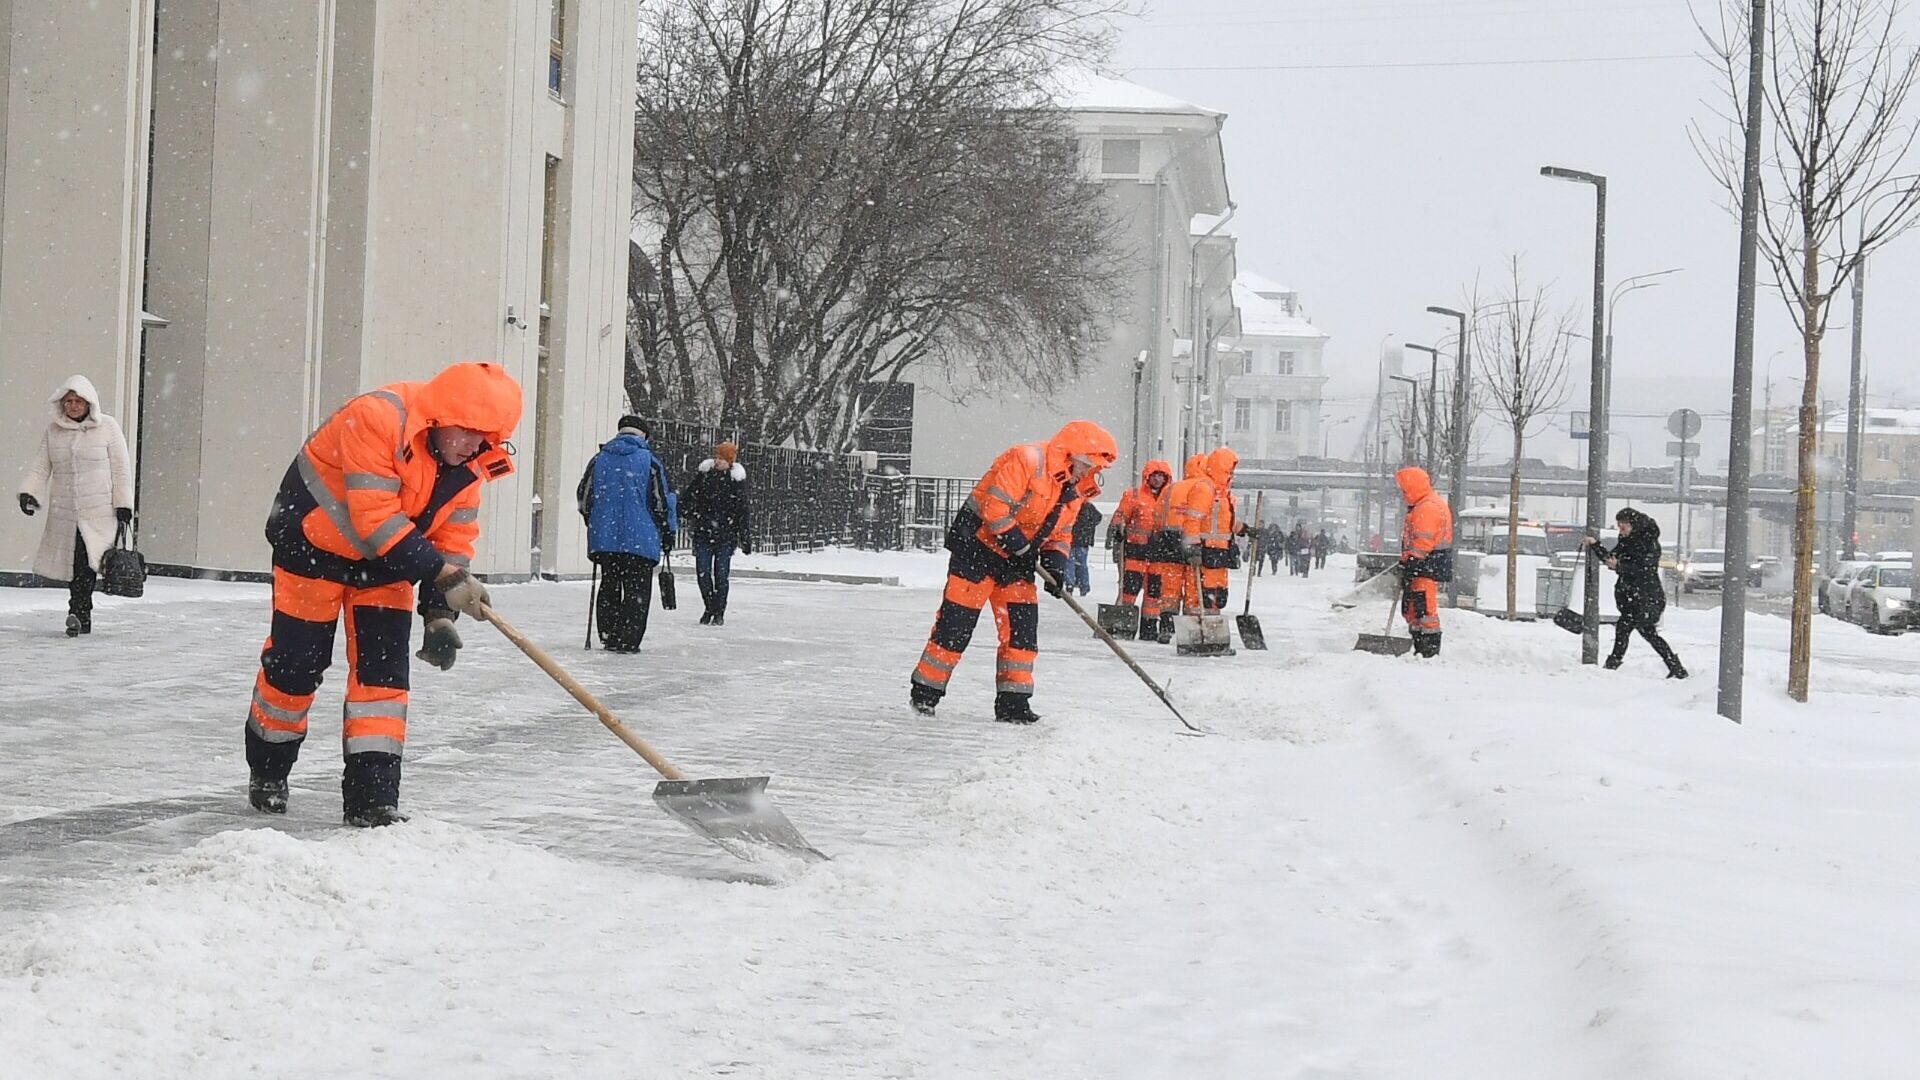 Коммунальные службы Москвы ликвидируют последствия сильного снегопада, архивное фото - Sputnik Таджикистан, 1920, 02.12.2021